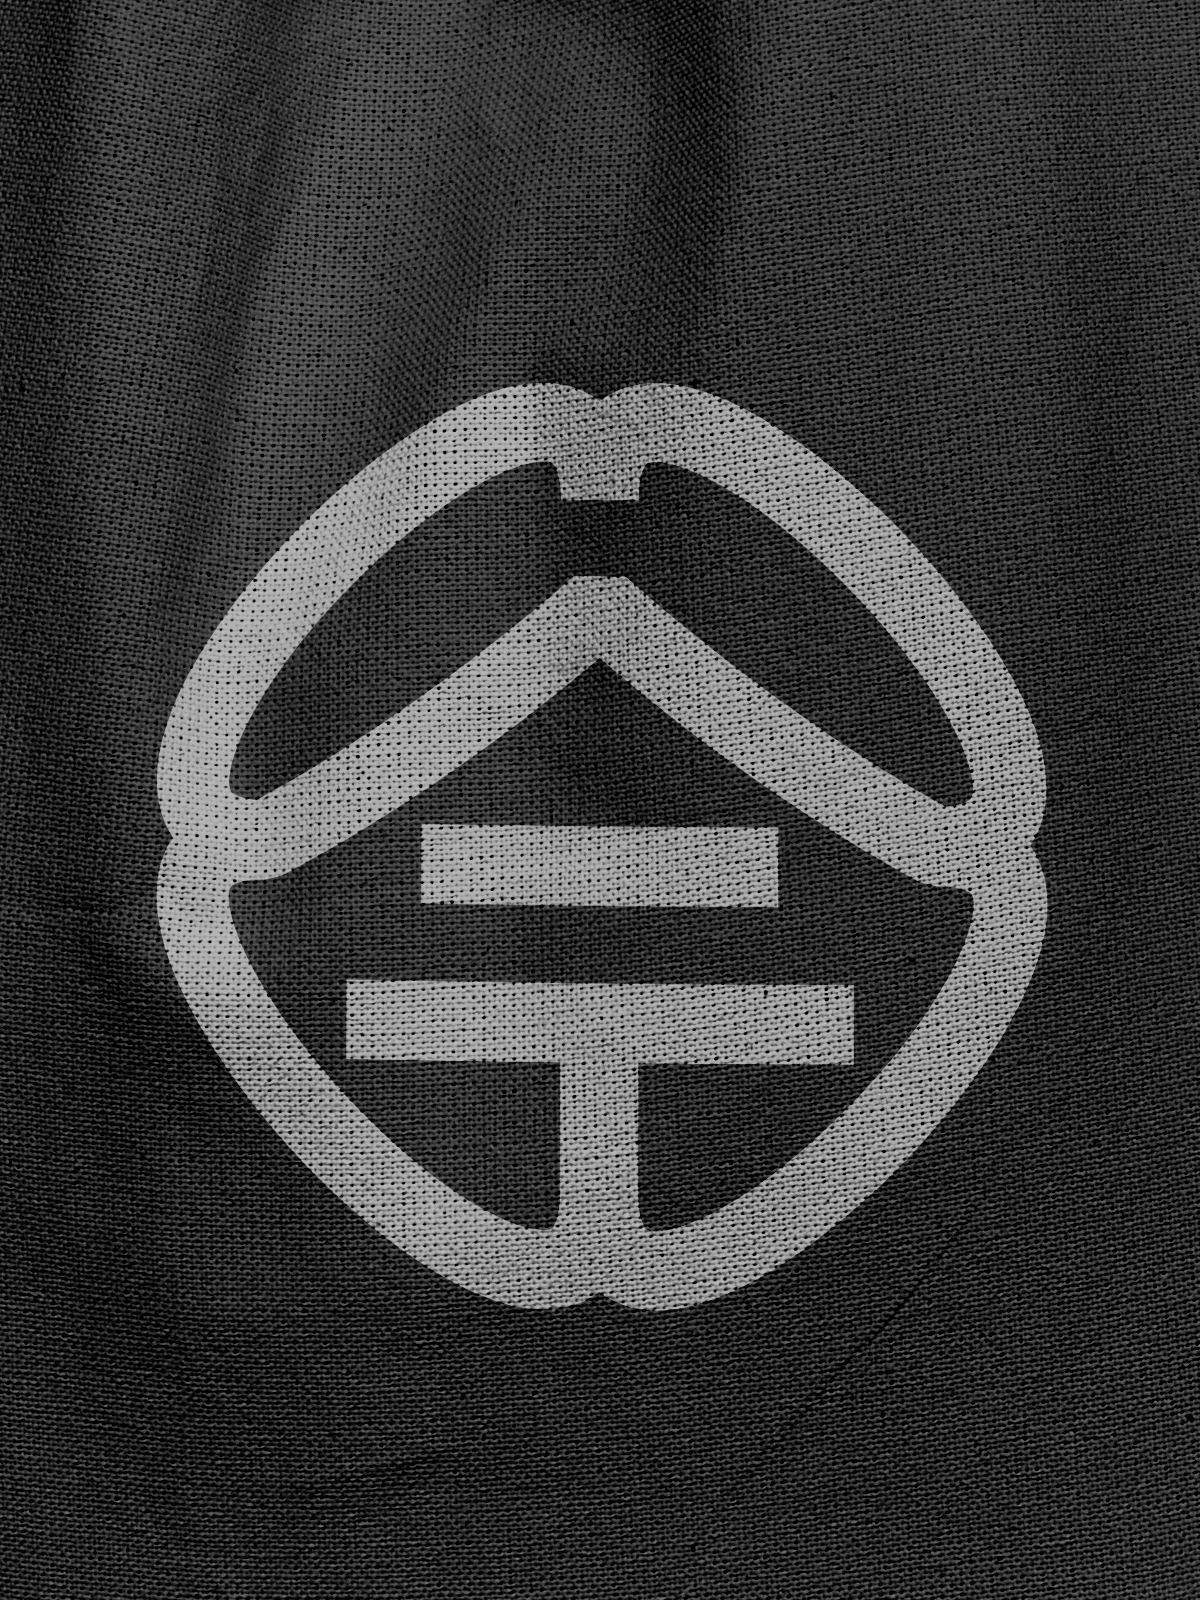 汉字图形化logo设计【今】图3